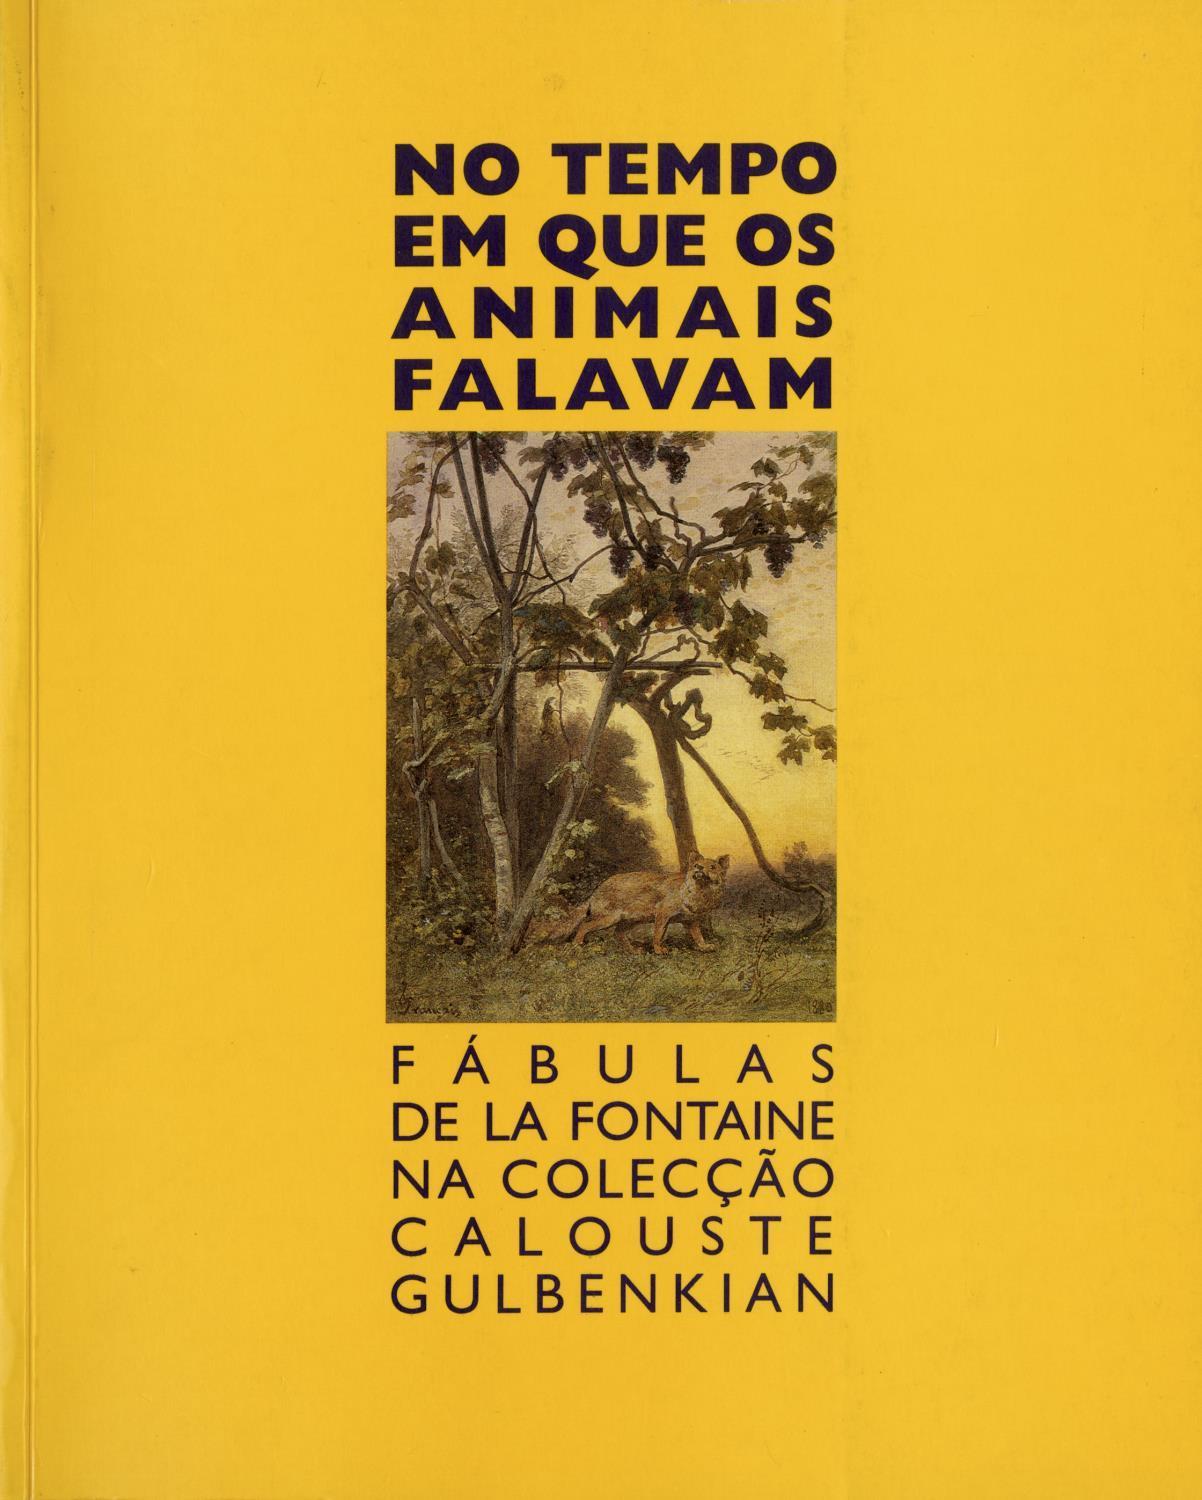 No Tempo em que os Animais Falavam. Fábulas de La Fontaine na Colecção Calouste Gulbenkian